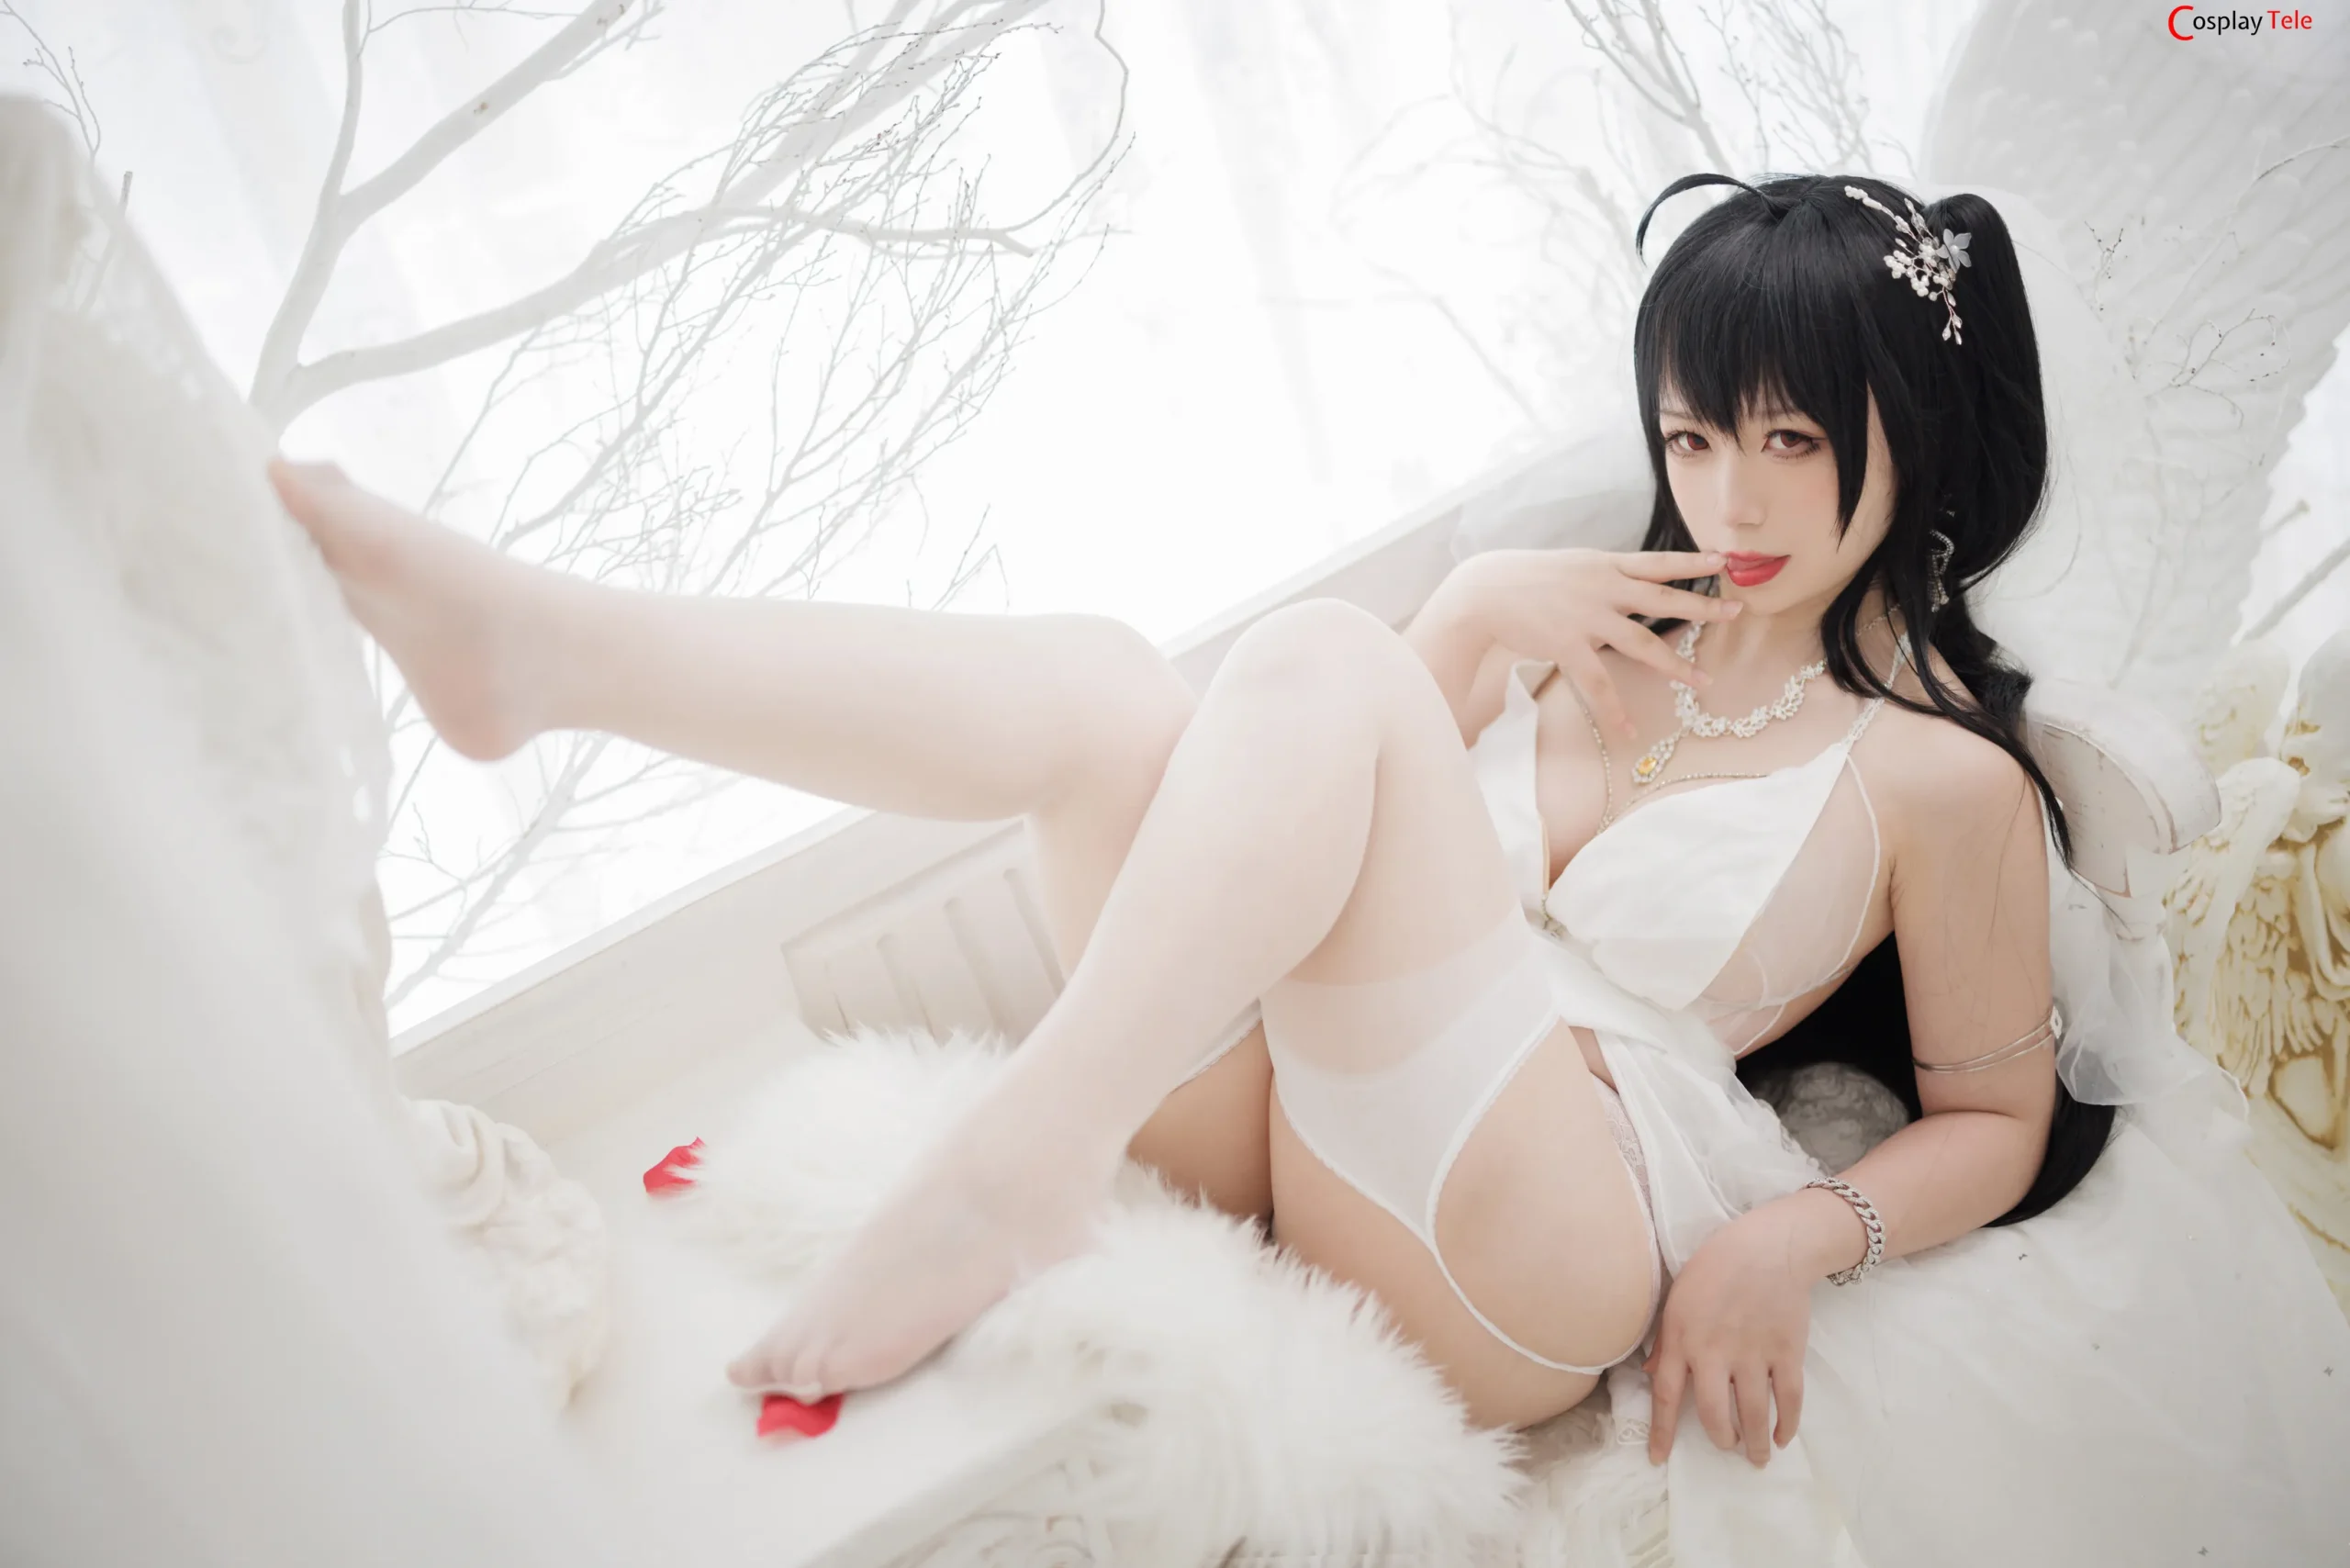 Sakura_FF cosplay Taiko Bride – Azur Lane (1)_result